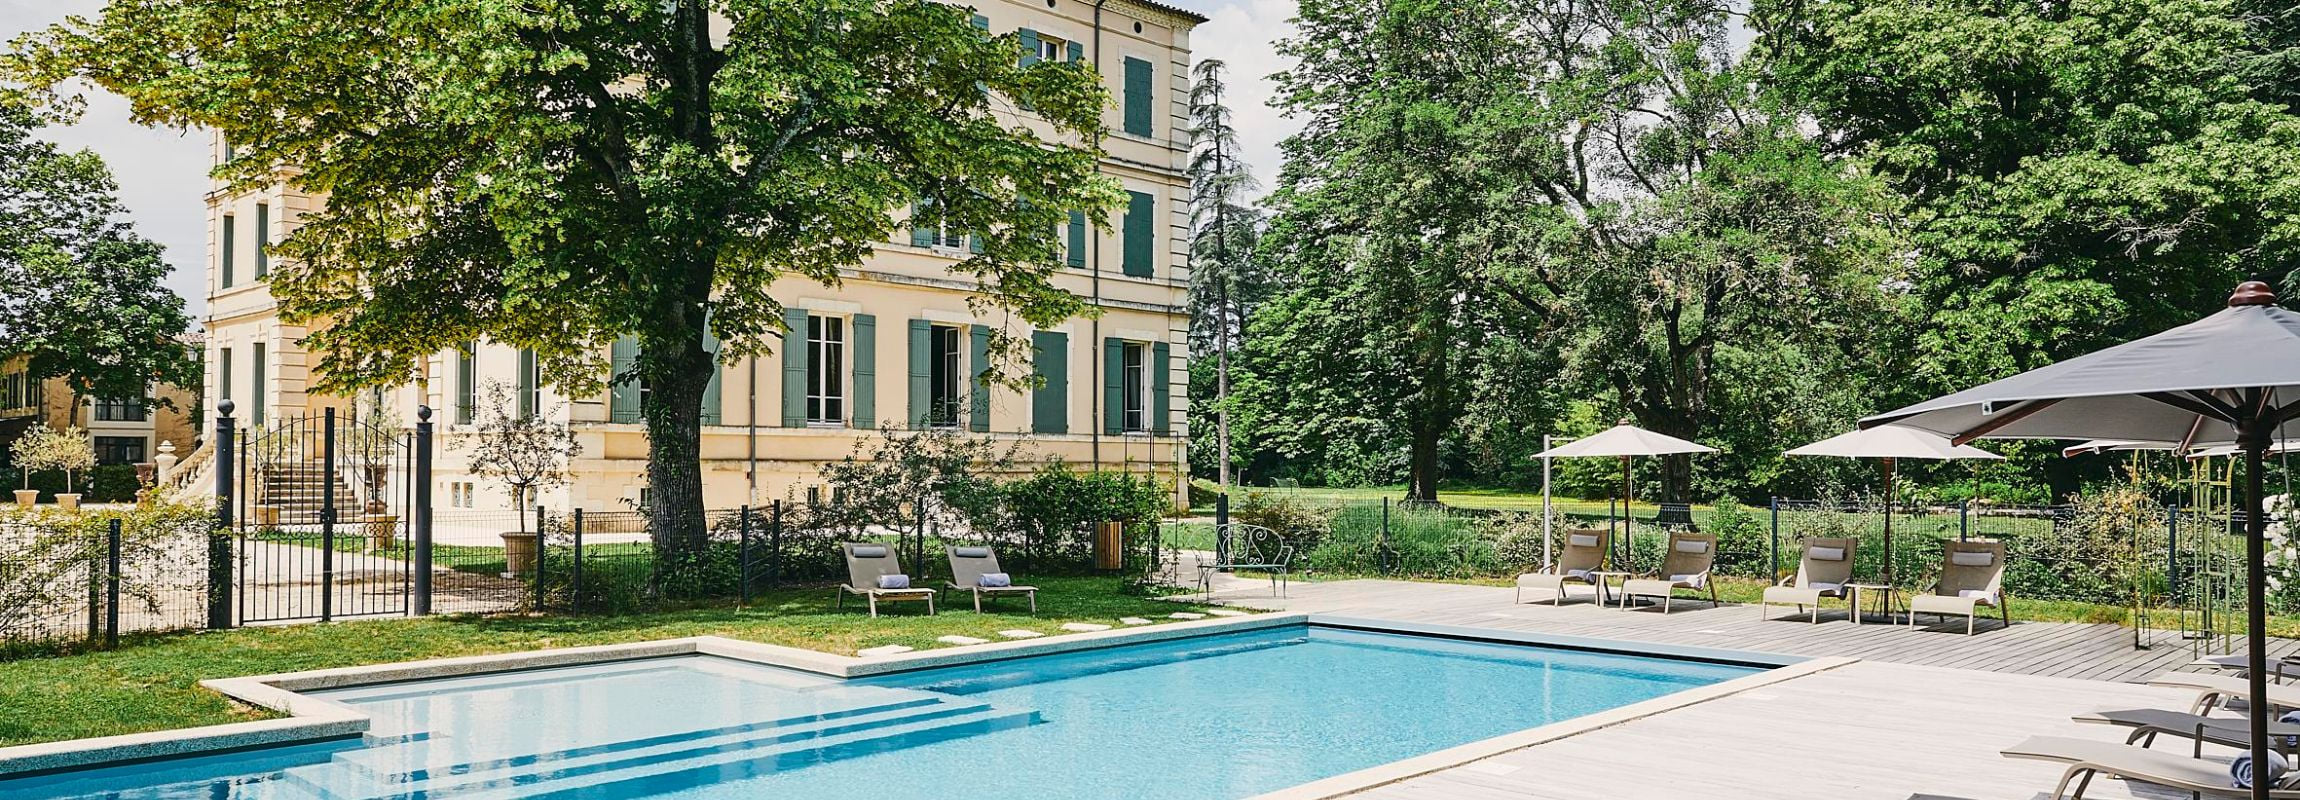 La piscine du Château de Montcaud est située au bout de chemin principal qui traverse la proprété de l'hôtel.